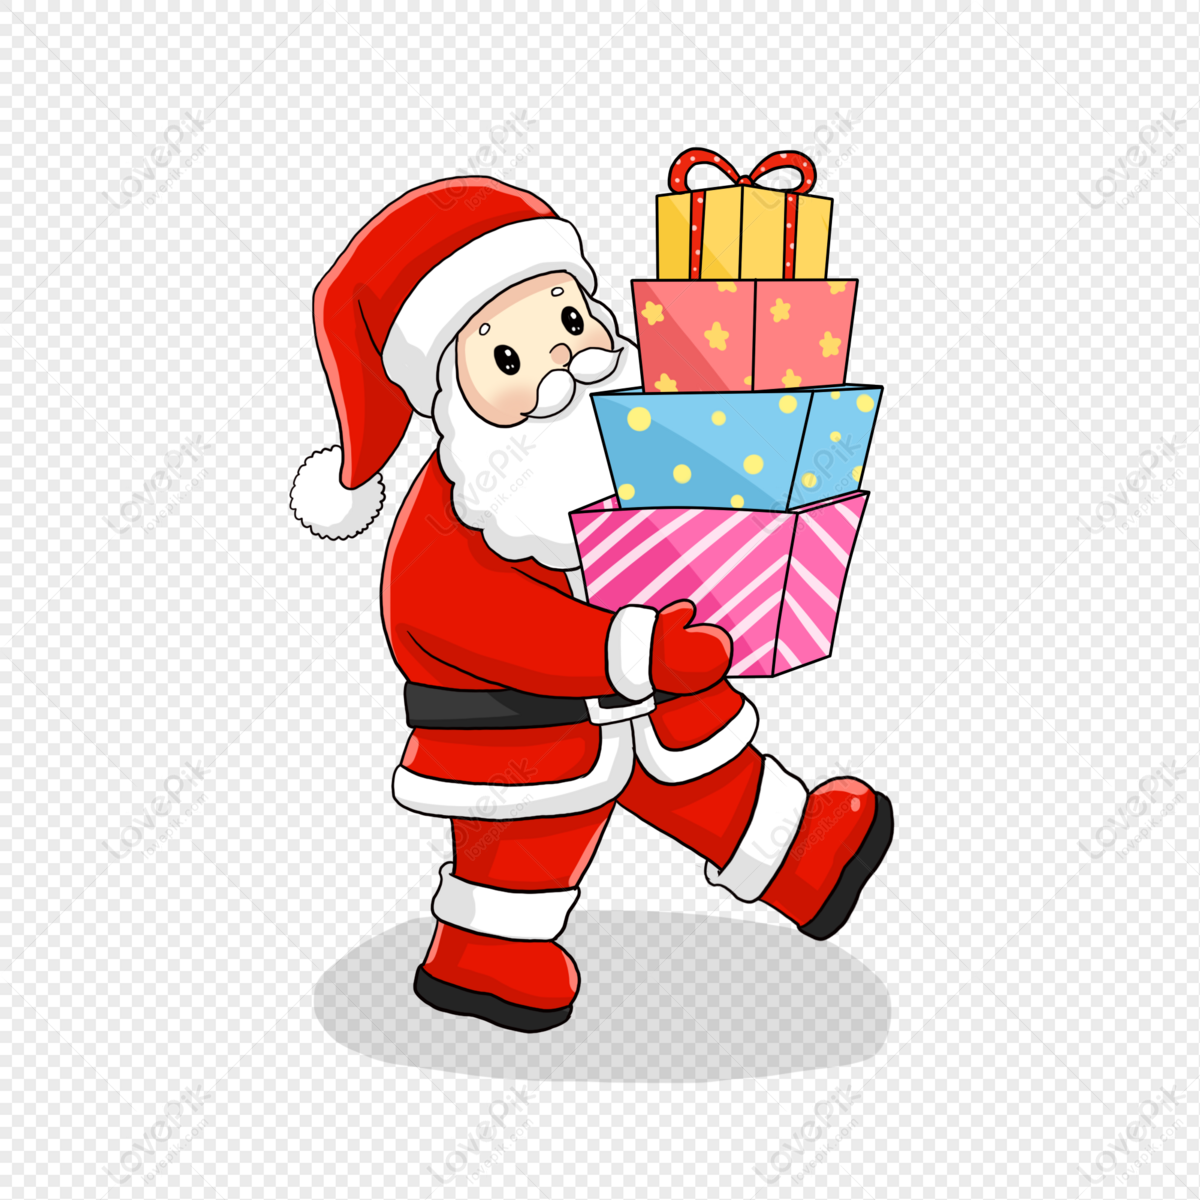 Phong cách thiết kế hình ảnh của Santa Claus với quà tặng hình nền PNG chính là sự lựa chọn hoàn hảo để tăng thêm hương vị giáng sinh trên màn hình máy tính của bạn. Hãy đến với chúng tôi để tìm kiếm những hình ảnh độc đáo, tuyệt vời và đầy hứng khởi cho không gian làm việc của bạn nhé.